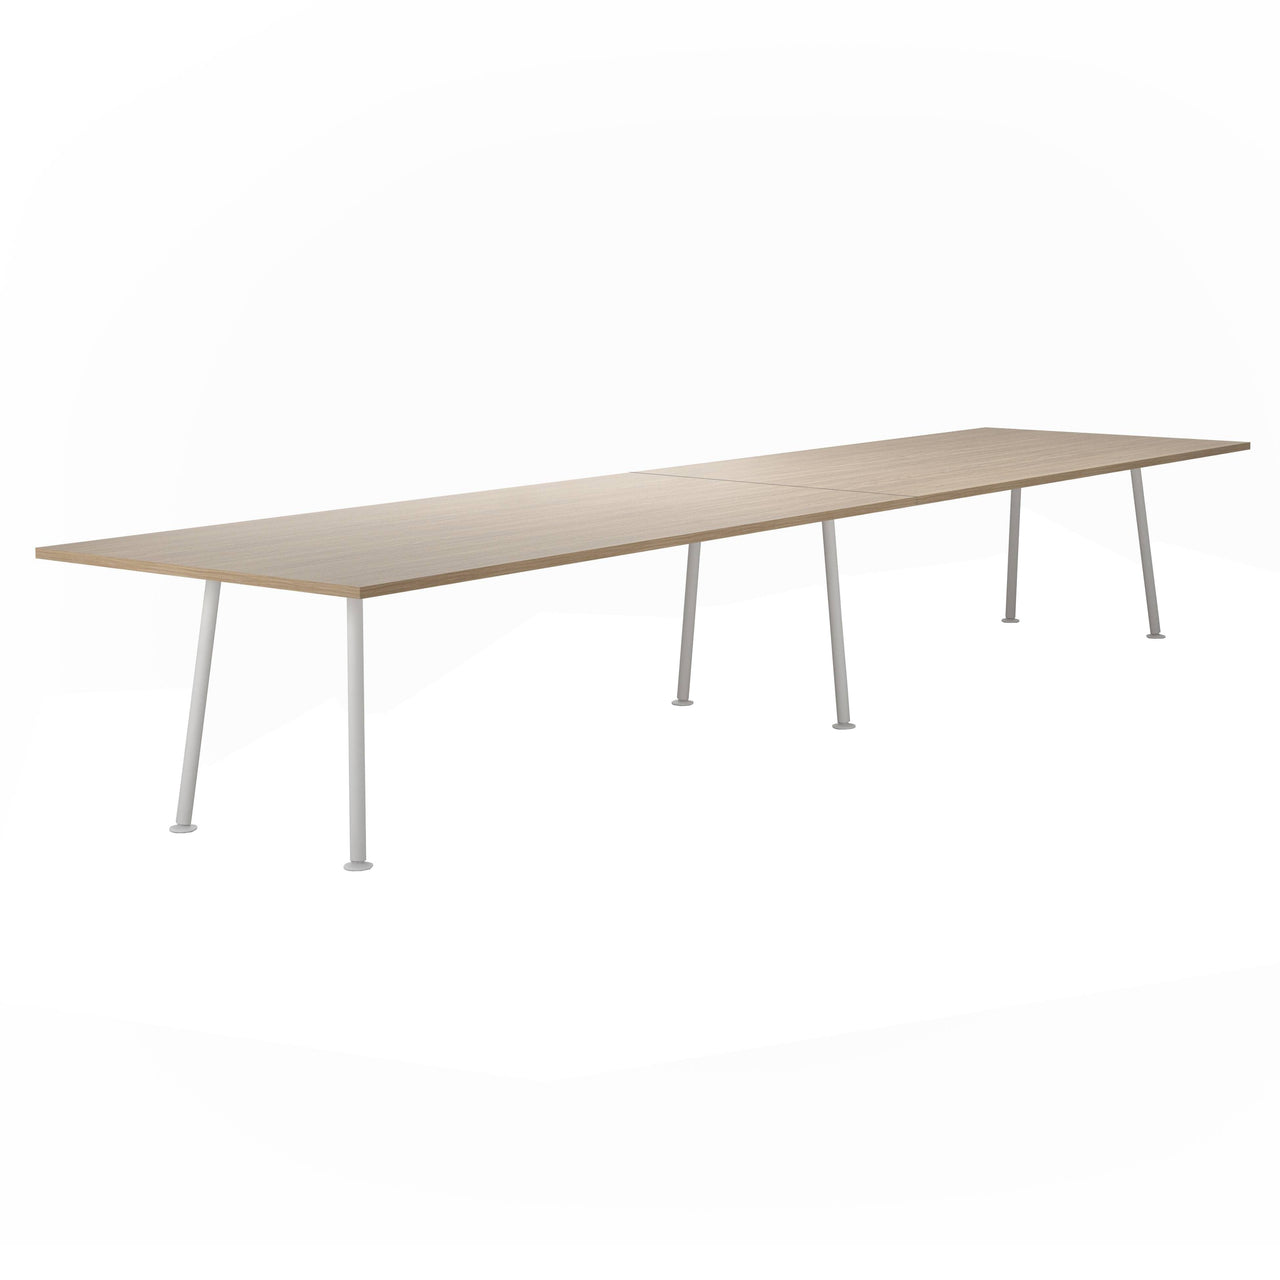 Landa Table: Counter + Large - 181.1